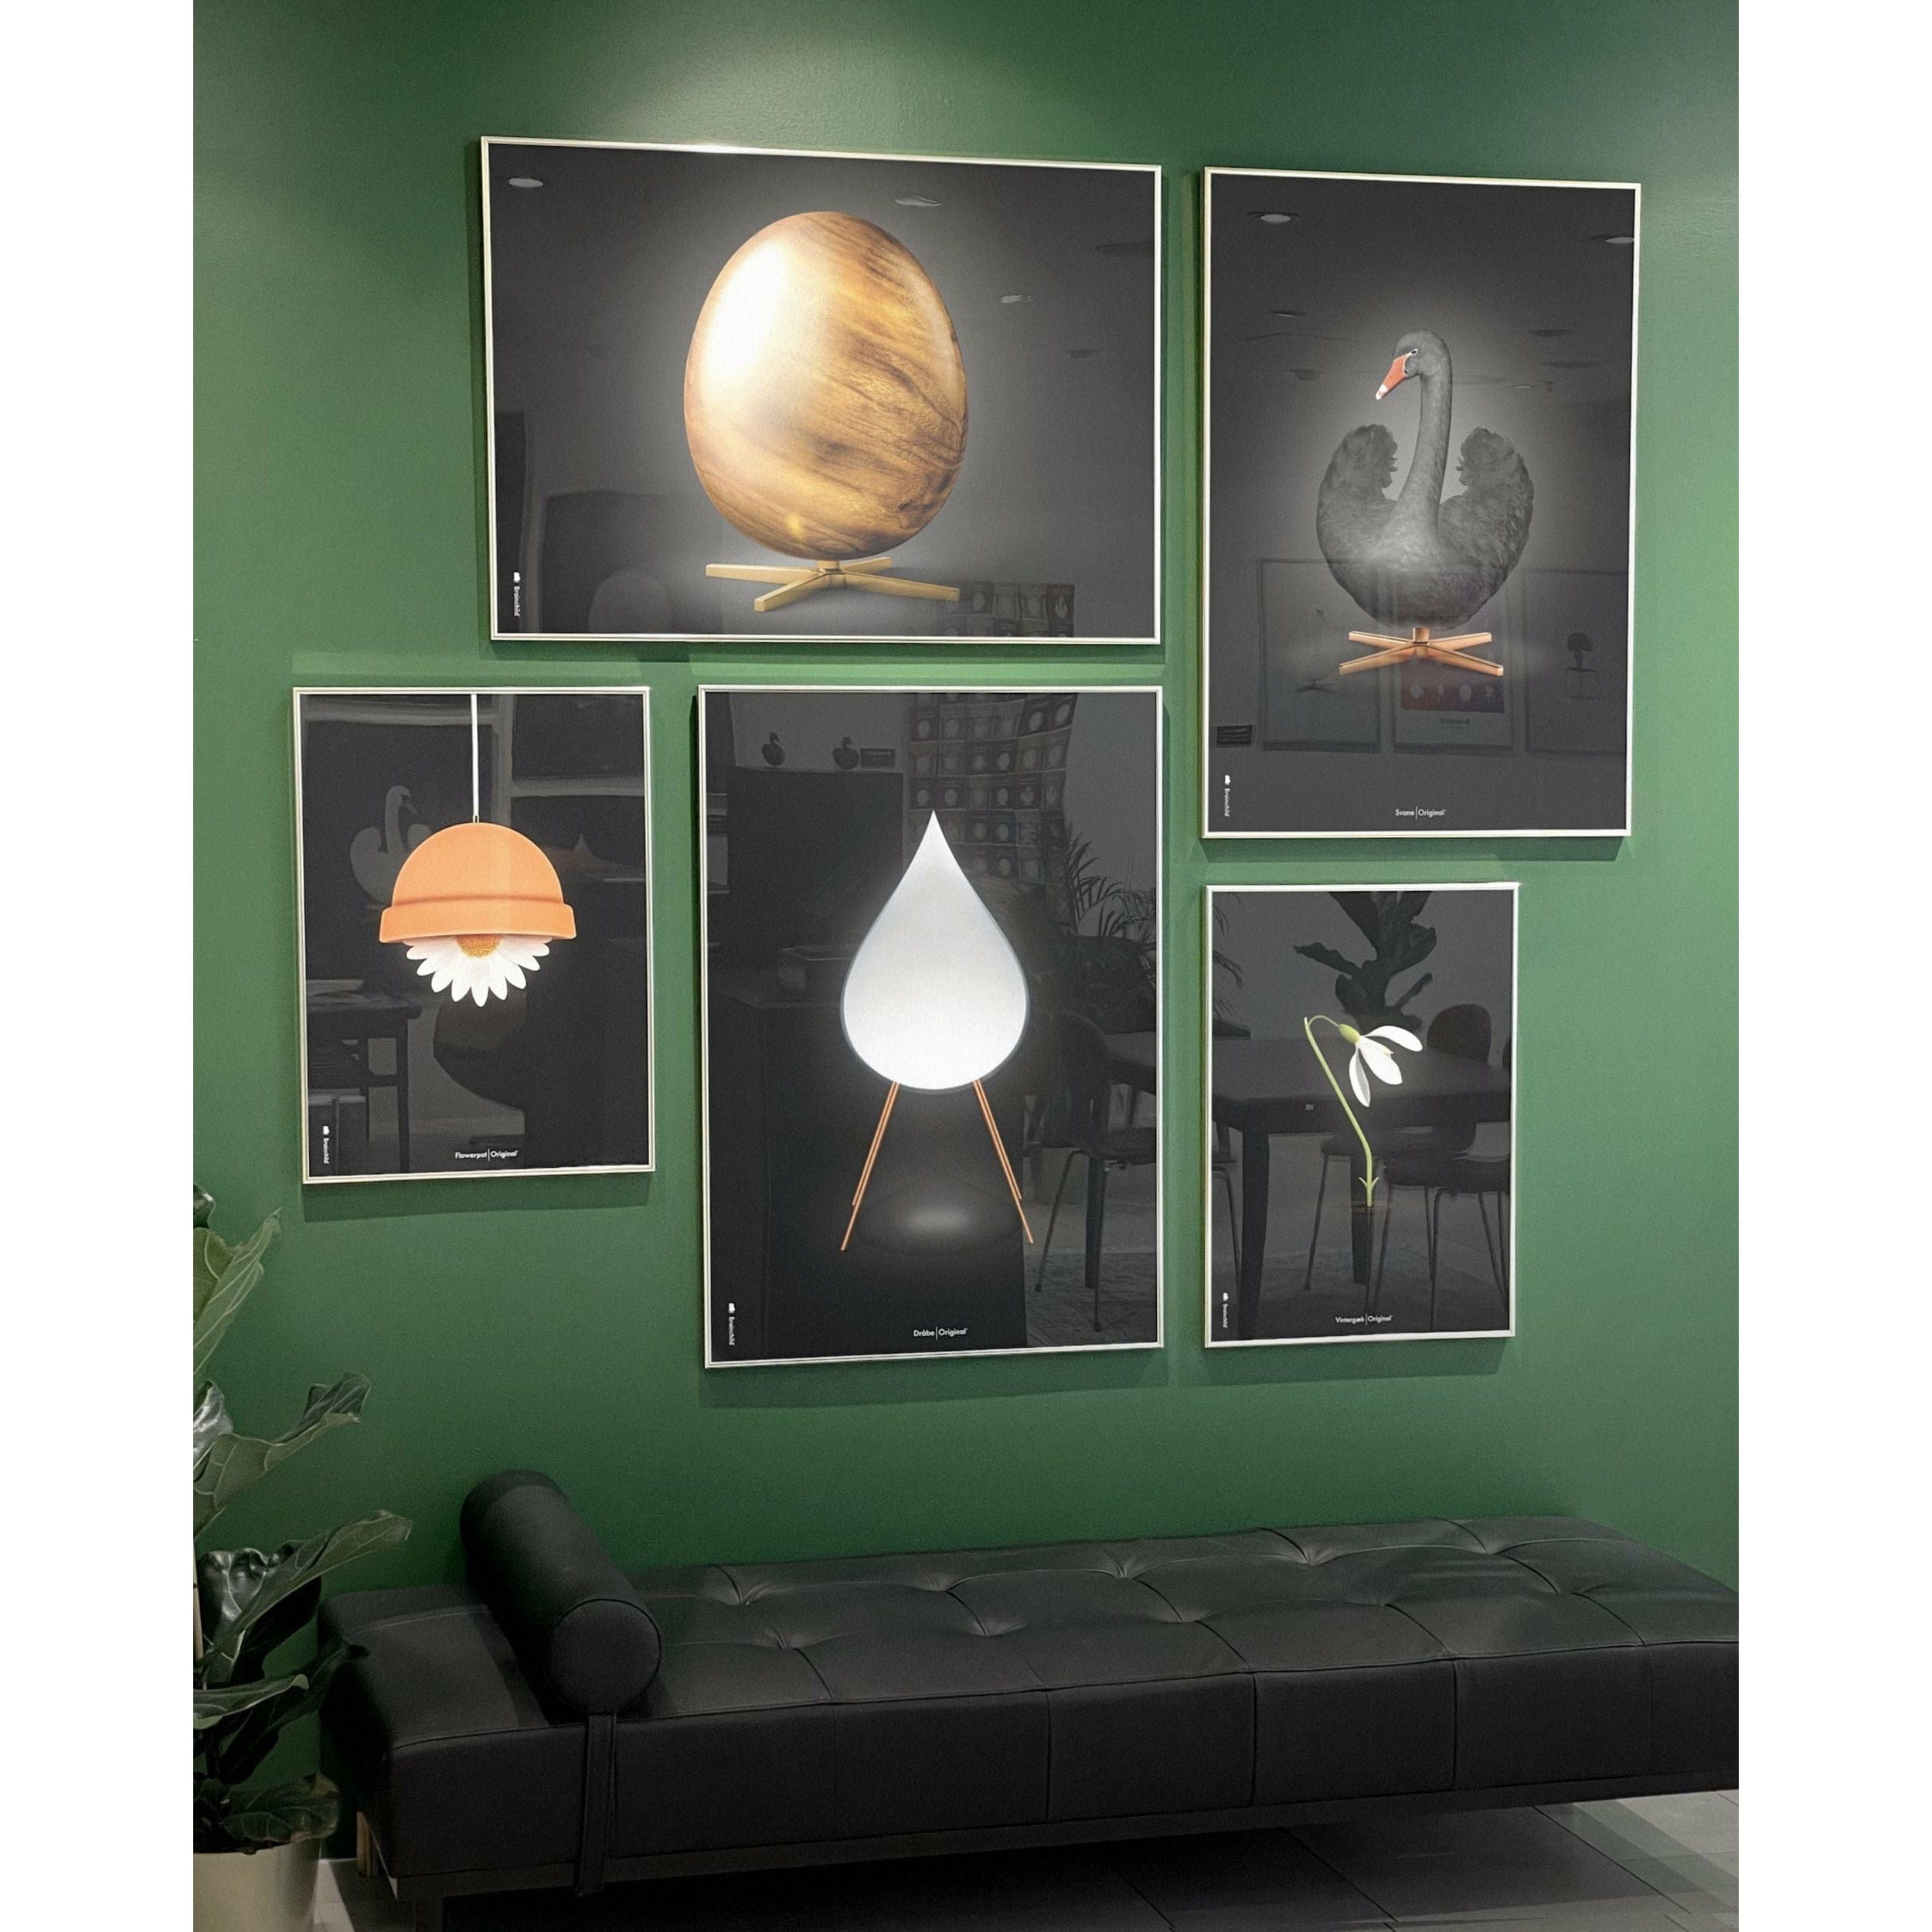 brainchild Eierkruisformaat Poster, frame gemaakt van licht hout 70 x100 cm, zwart